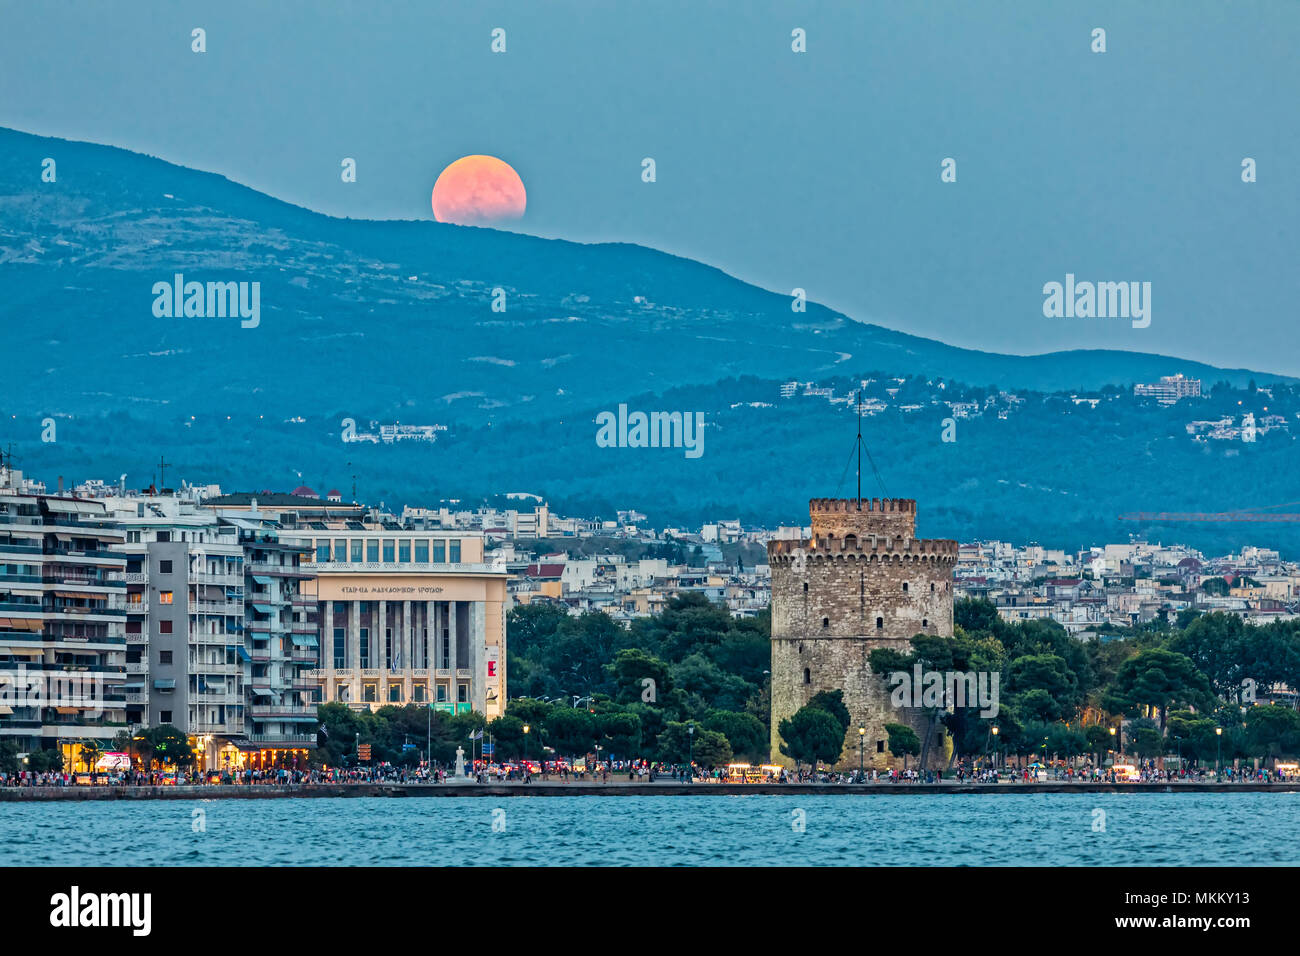 Thessaloniki, Griechenland - 7. August 2017: Volle Blood Moon und Eclipse Backofen Weißen Turm von Thessaloniki, Griechenland Stockfoto